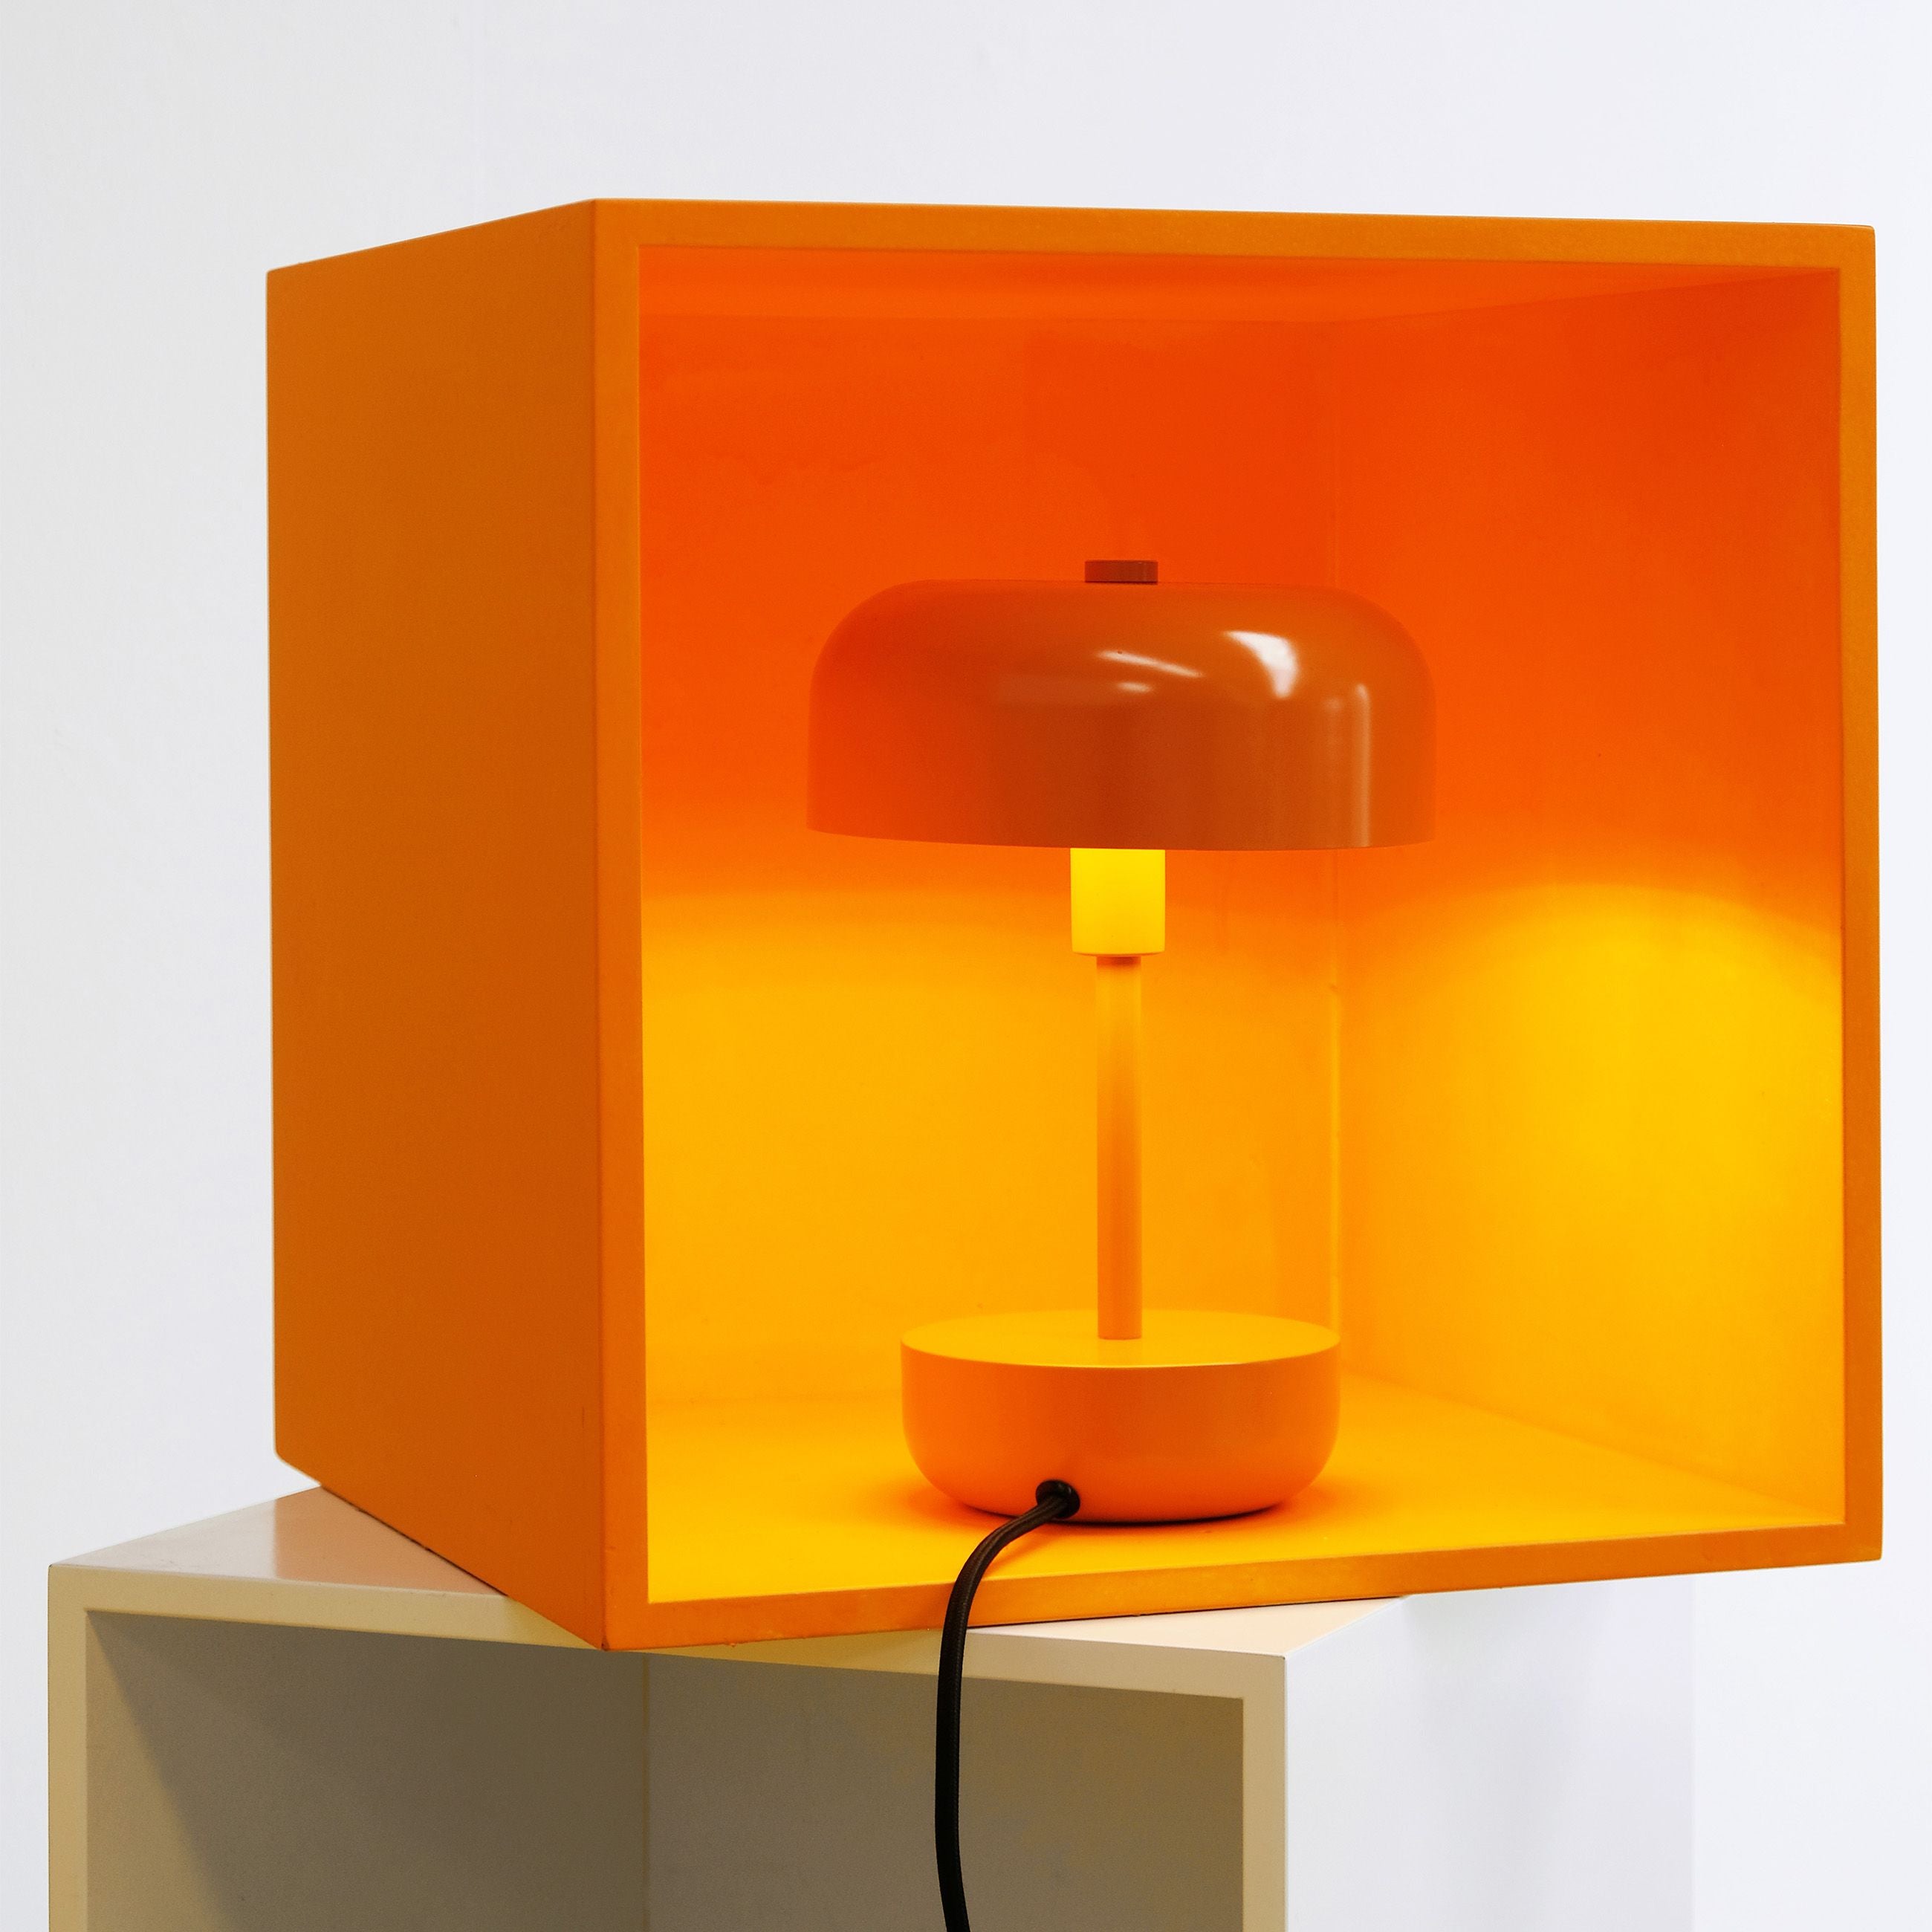 Lámpara de mesa Dyberg Larsen Haipot, naranja